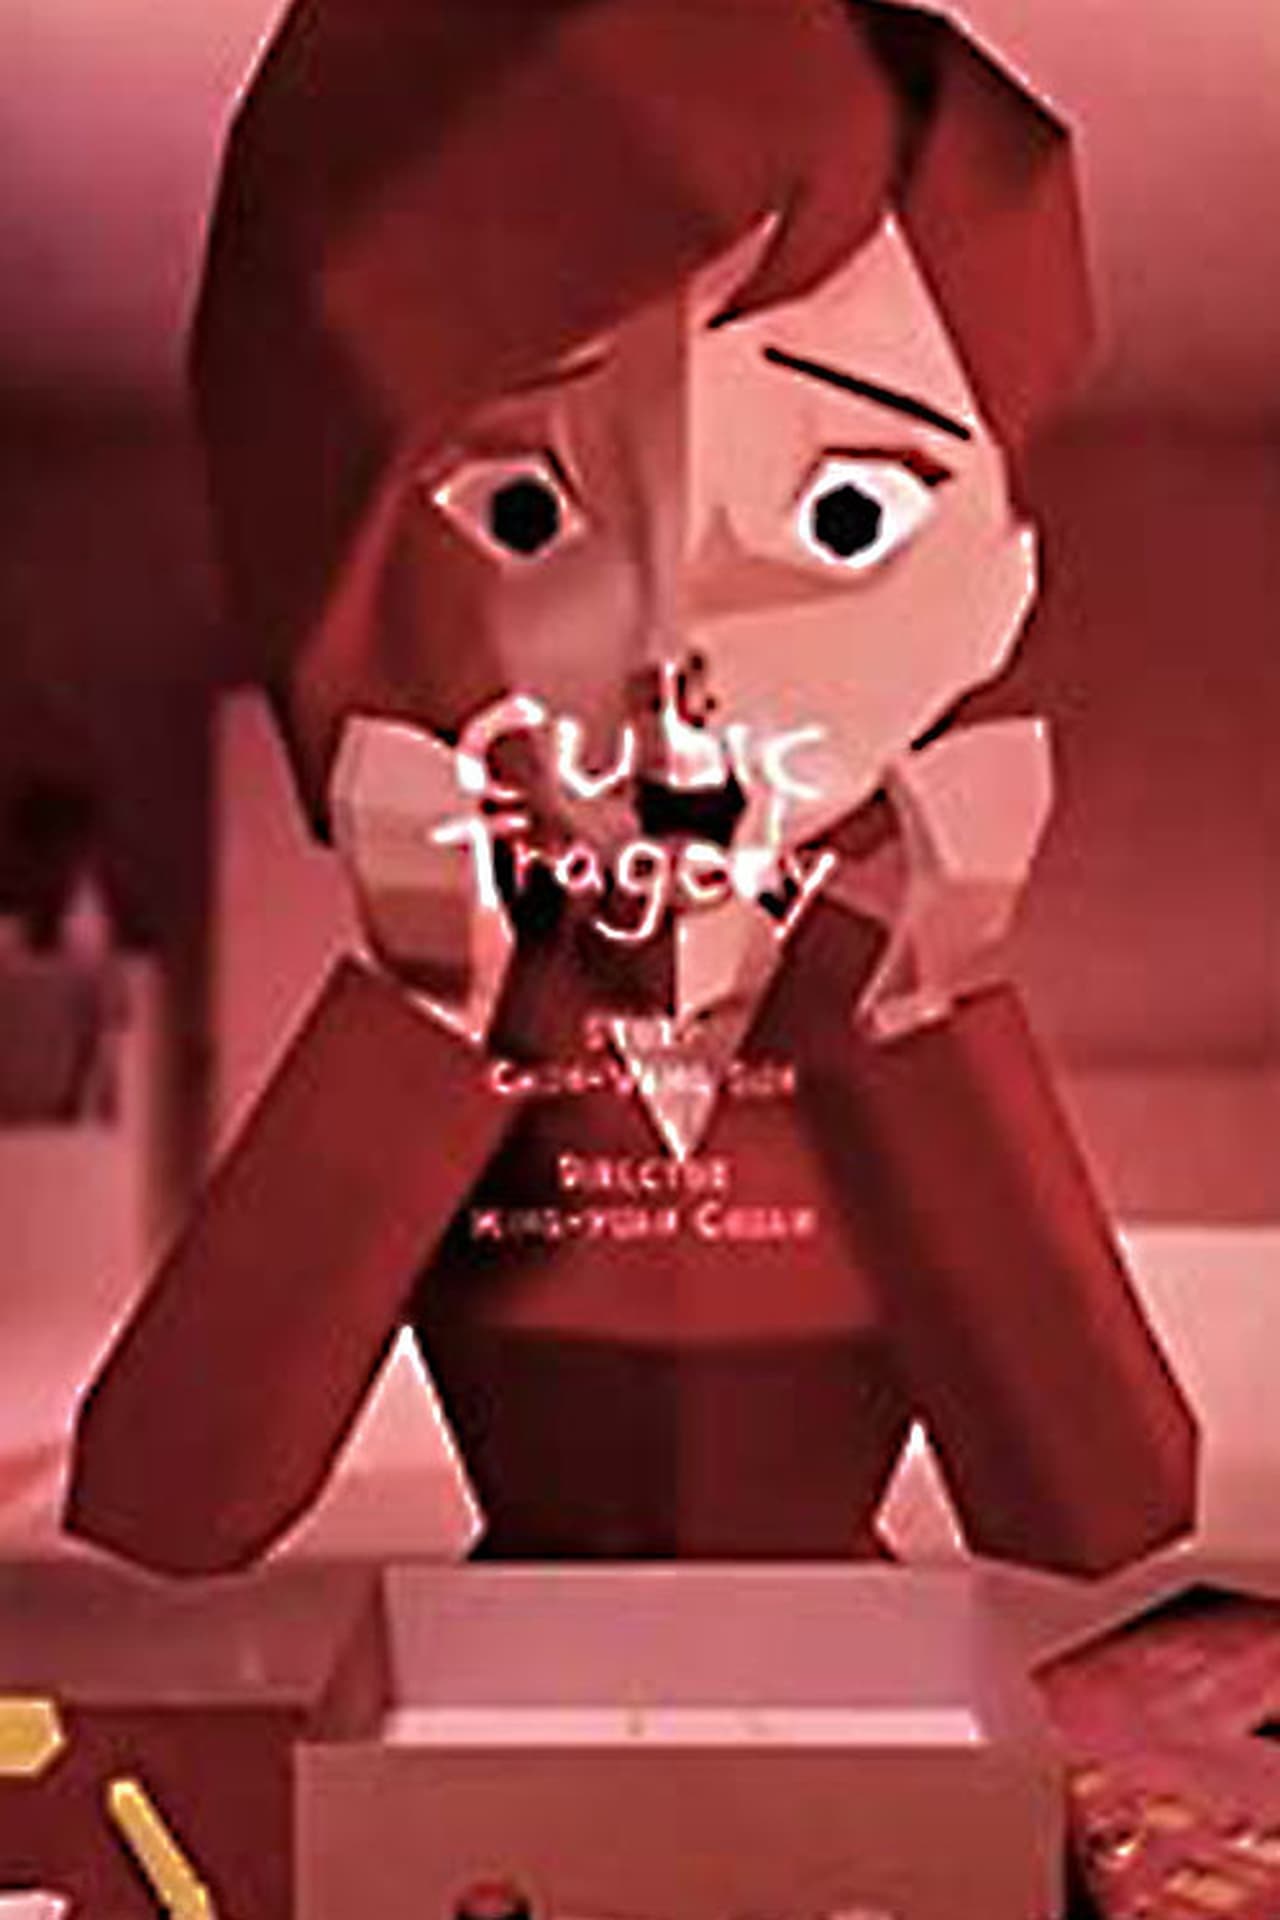 Cubic Tragedy